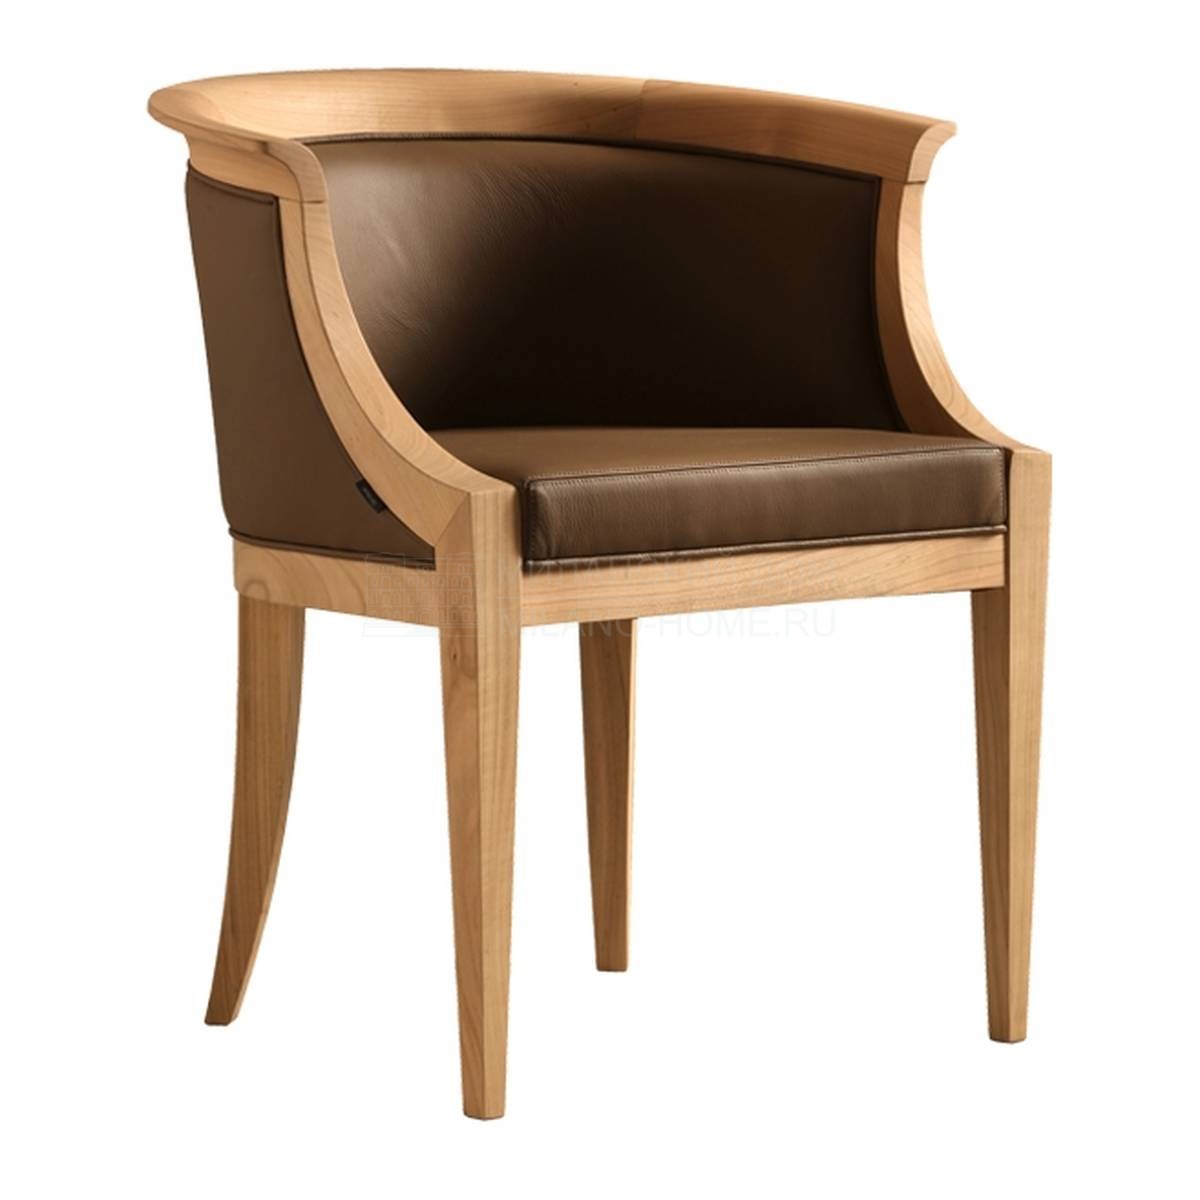 Кожаный стул Roberta / Art.3806 из Италии фабрики MORELATO